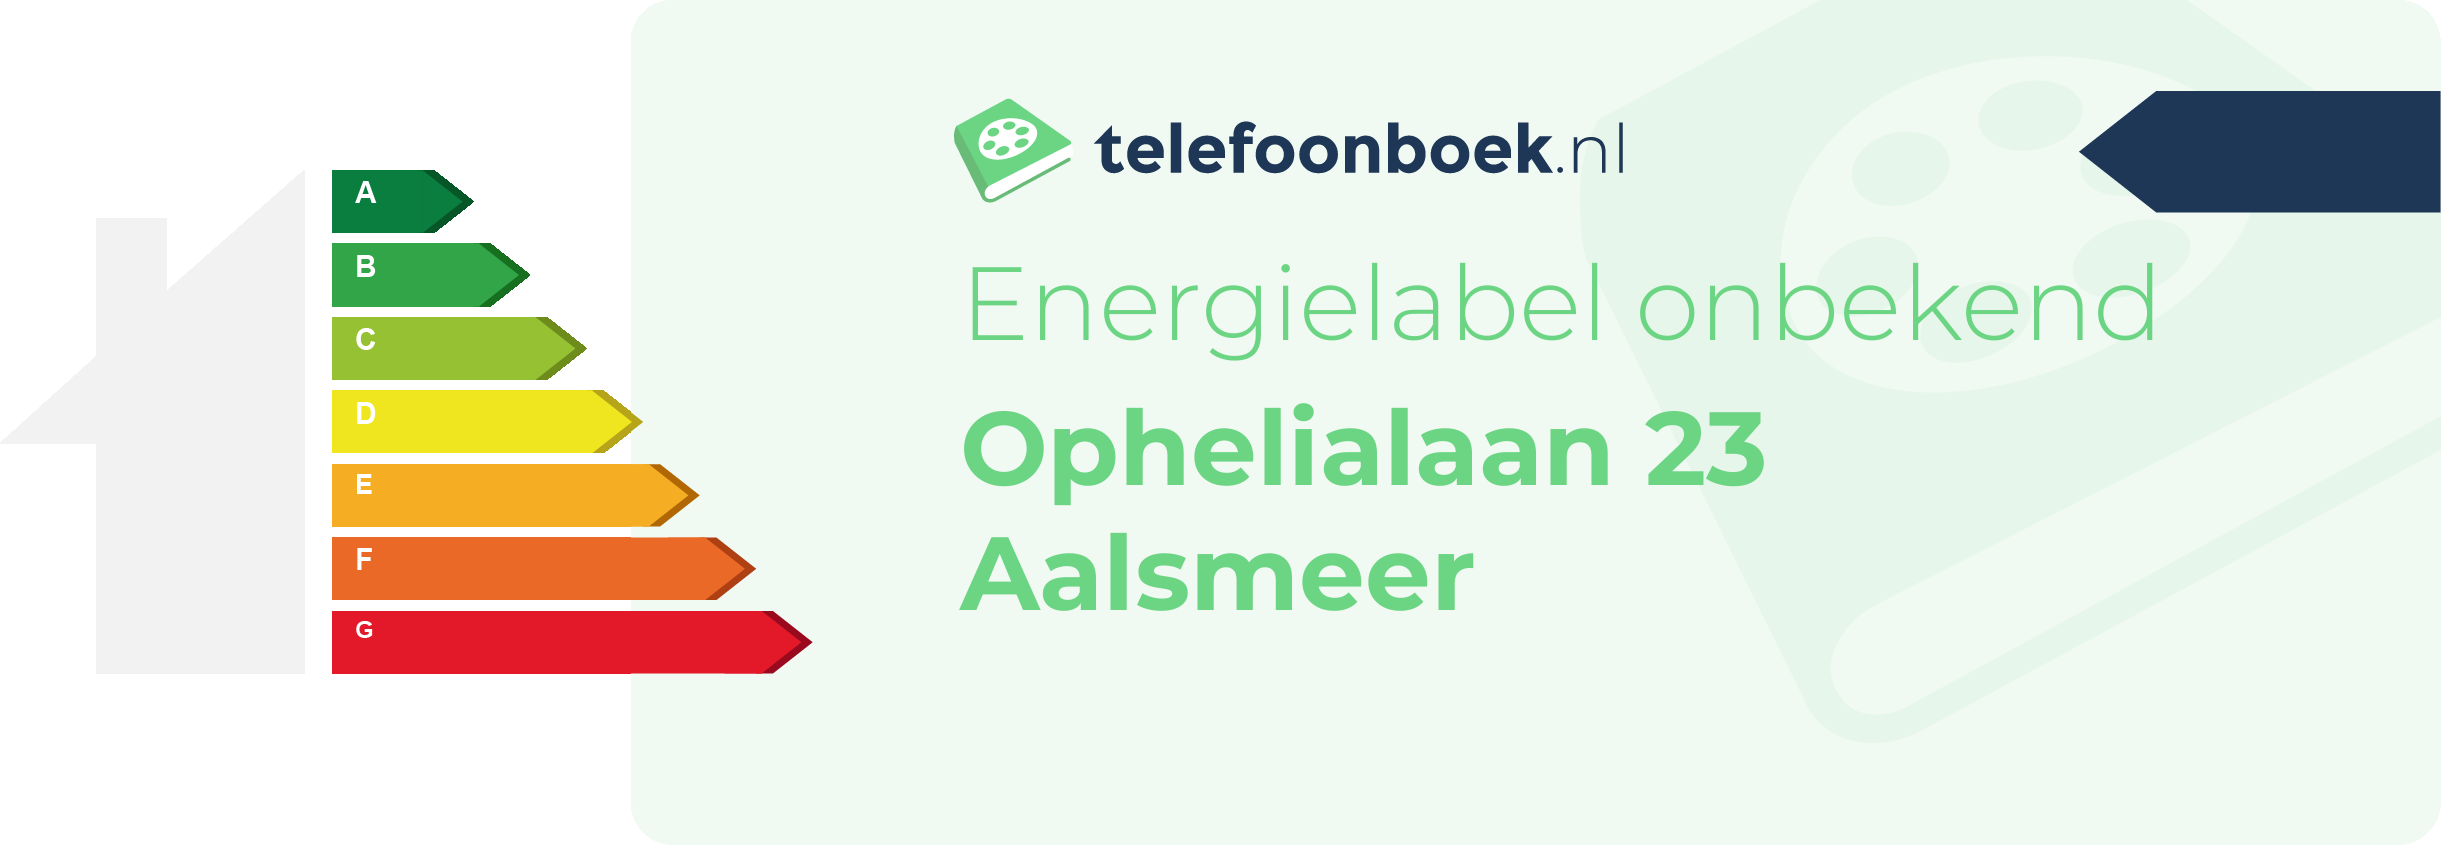 Energielabel Ophelialaan 23 Aalsmeer